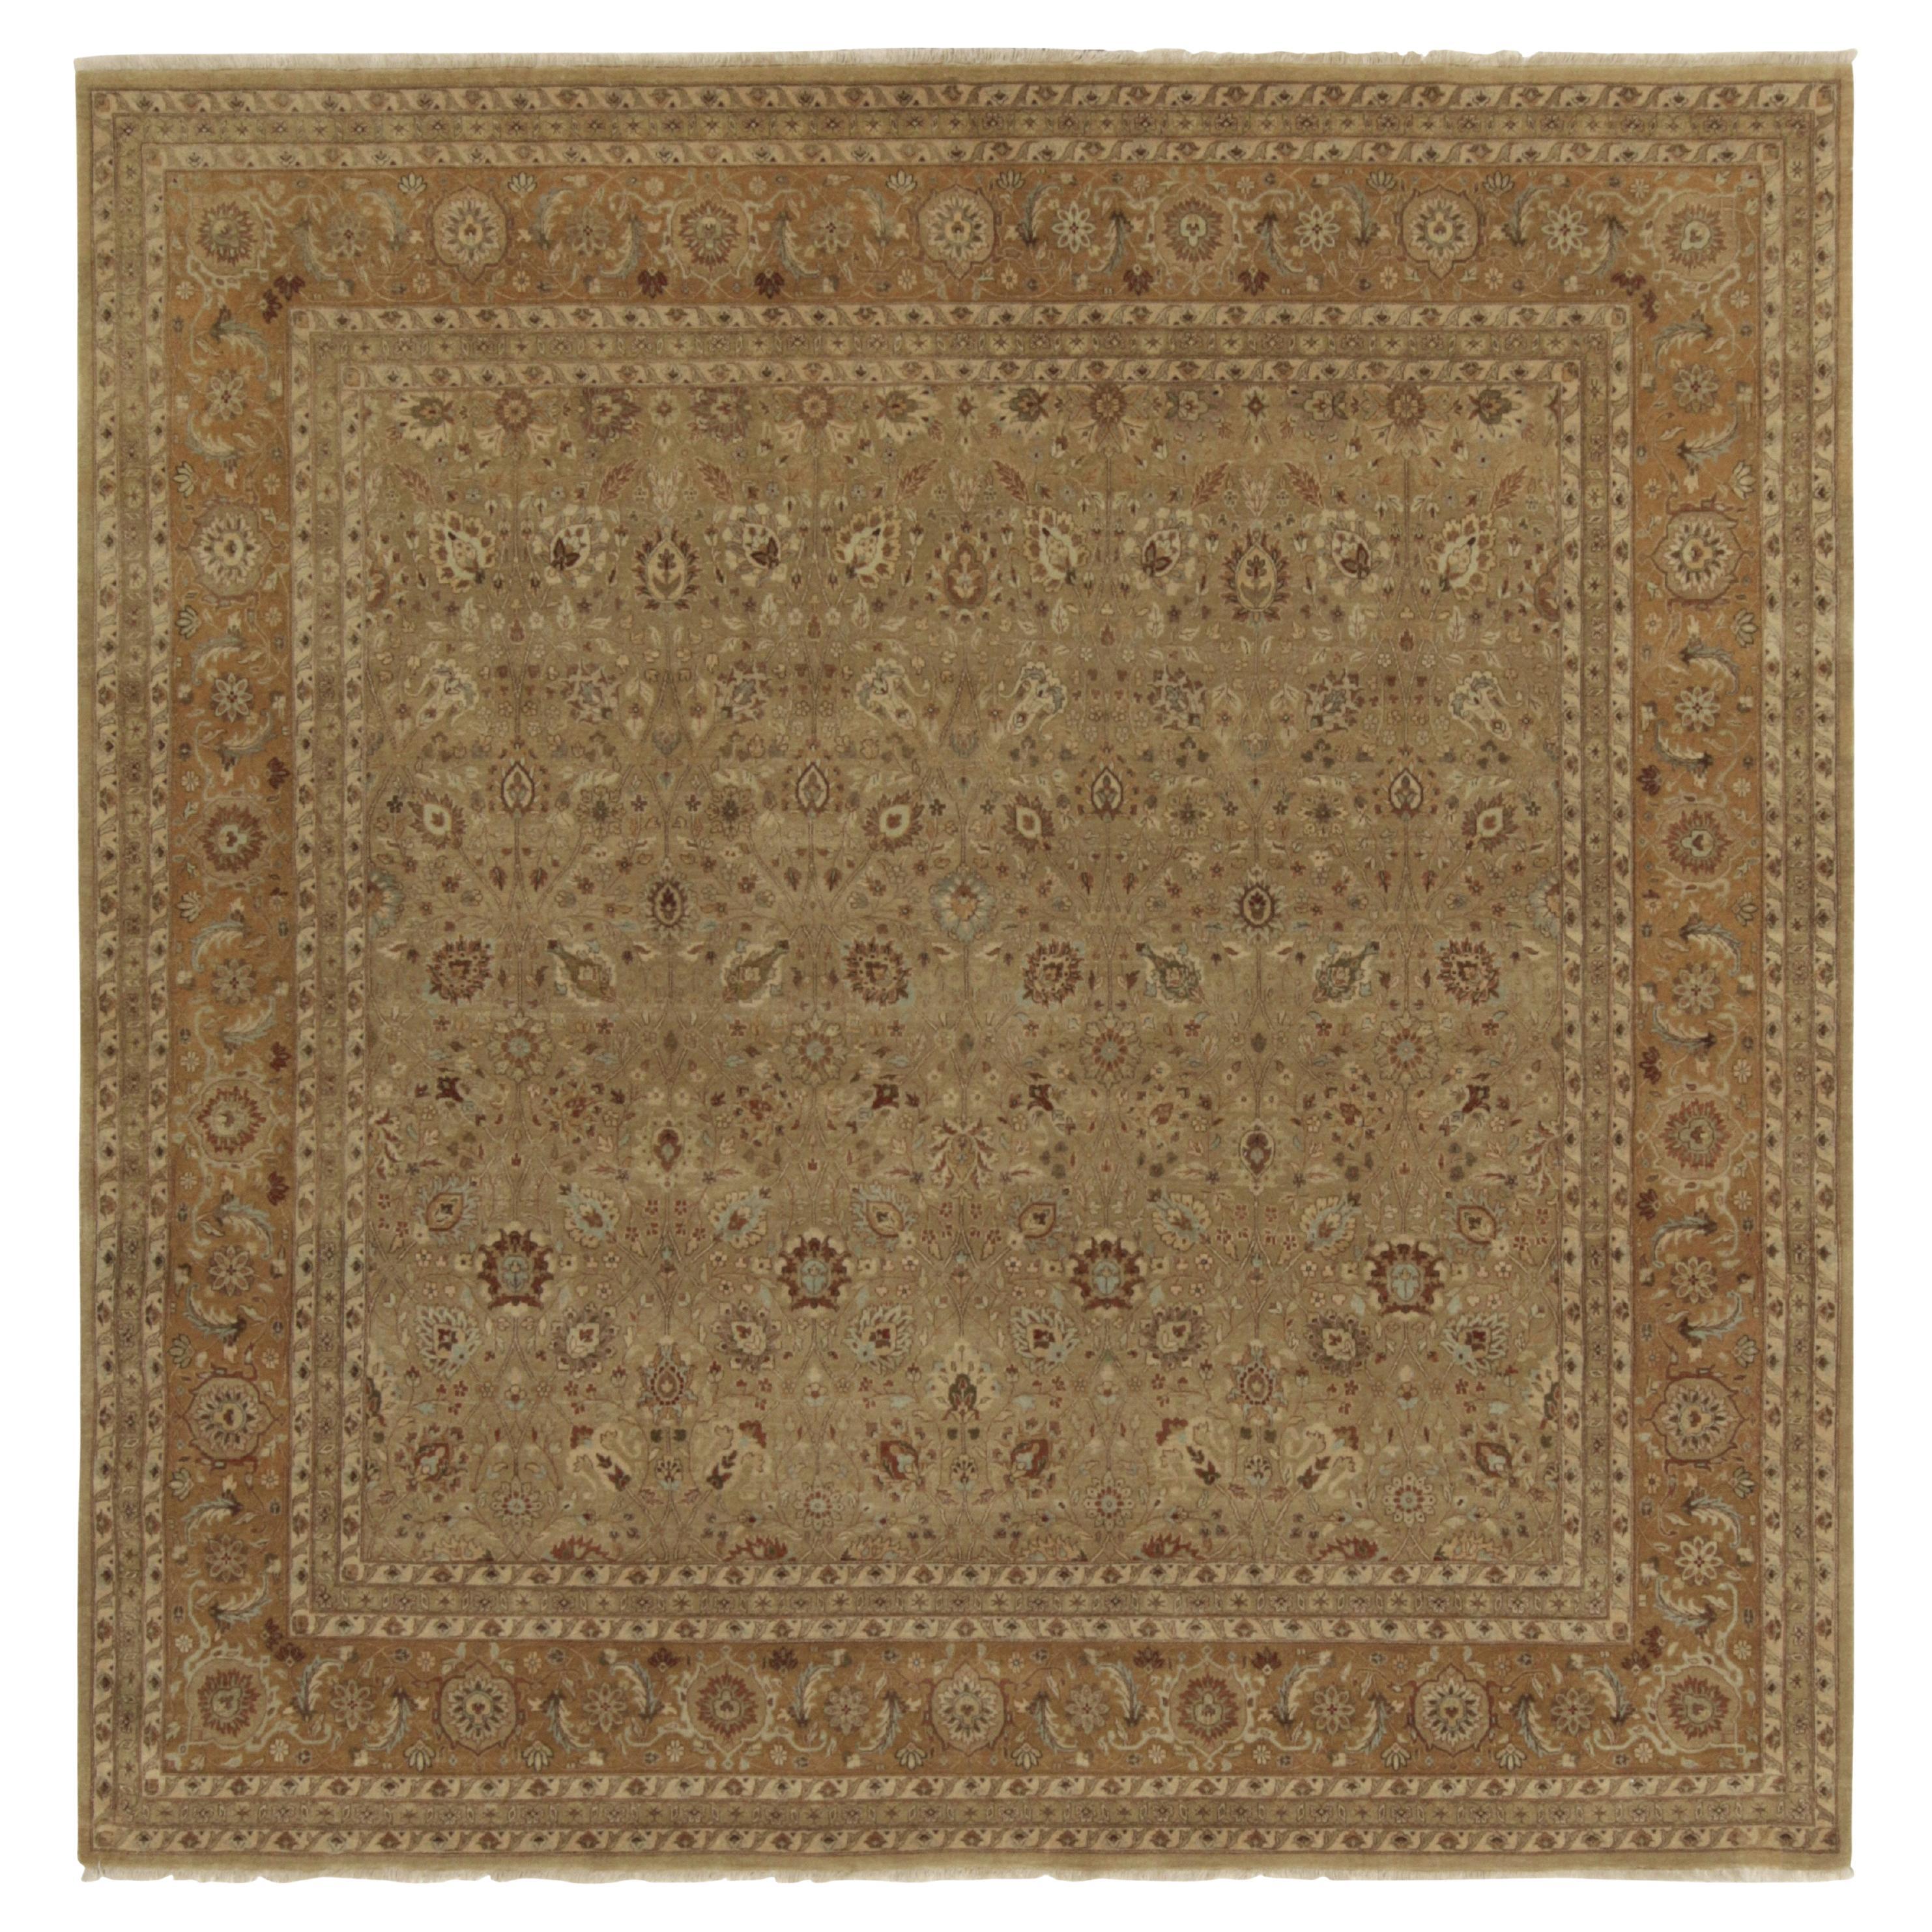 Rug & Kilim's Quadratischer Teppich im antiken persischen Stil in Beige-Braun mit Blumenmustern